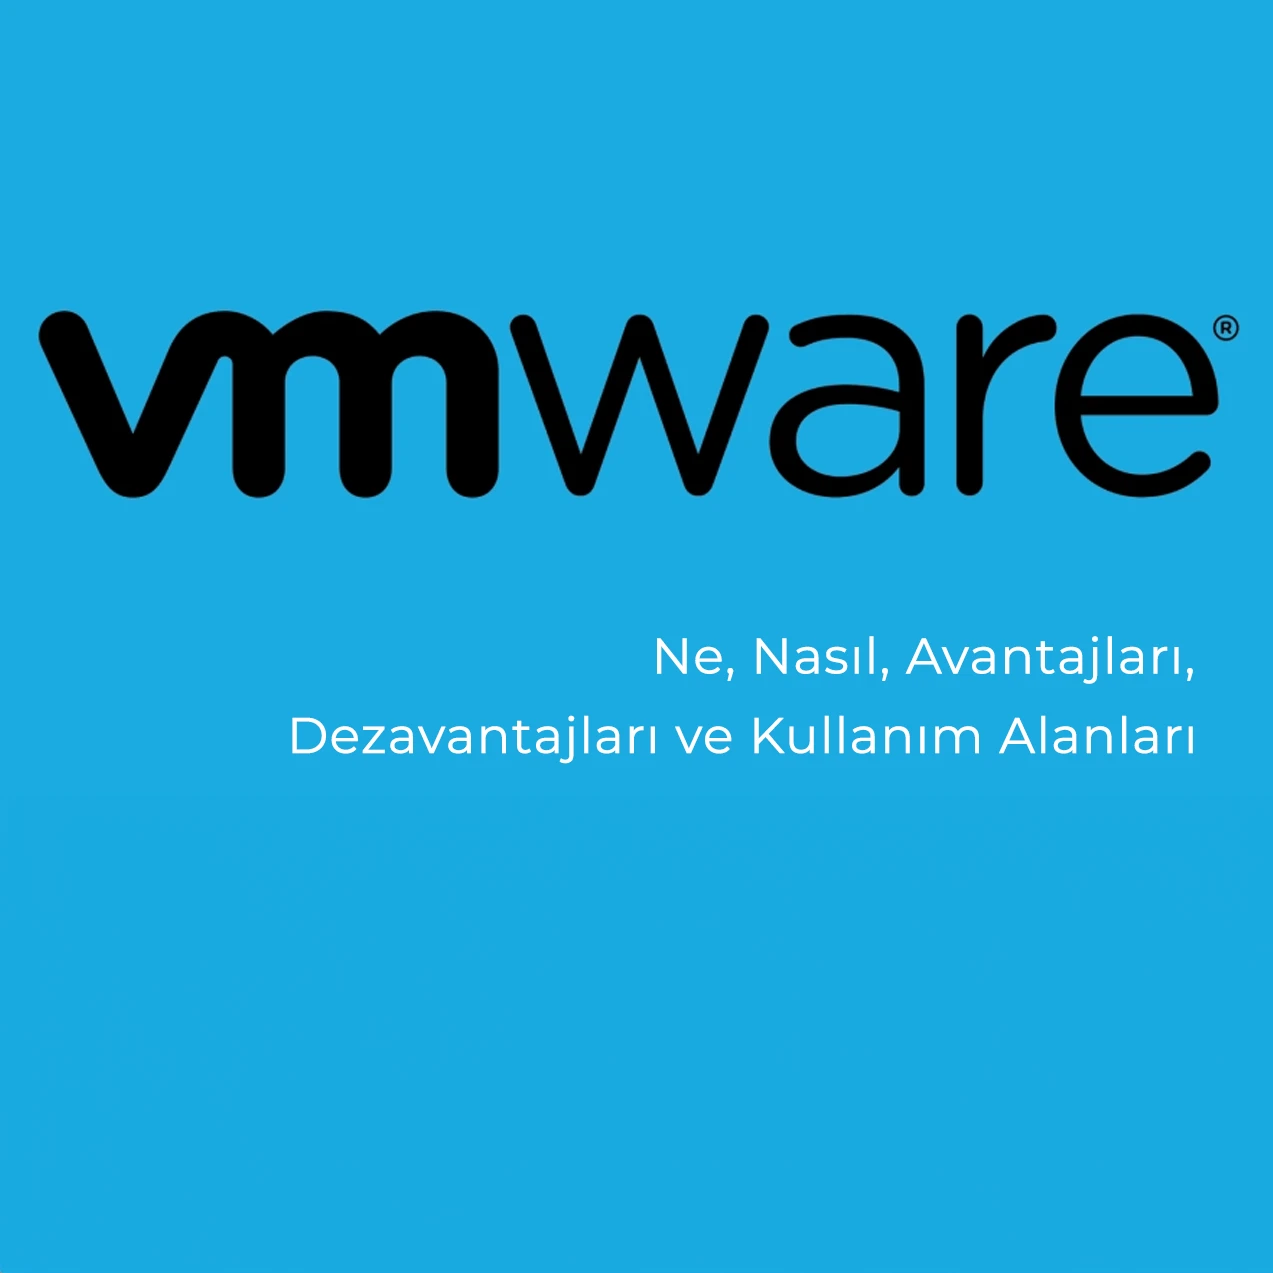 VMware Sanal Sunucu: Ne, Nasıl, Avantajları, Dezavantajları ve Kullanım Alanları